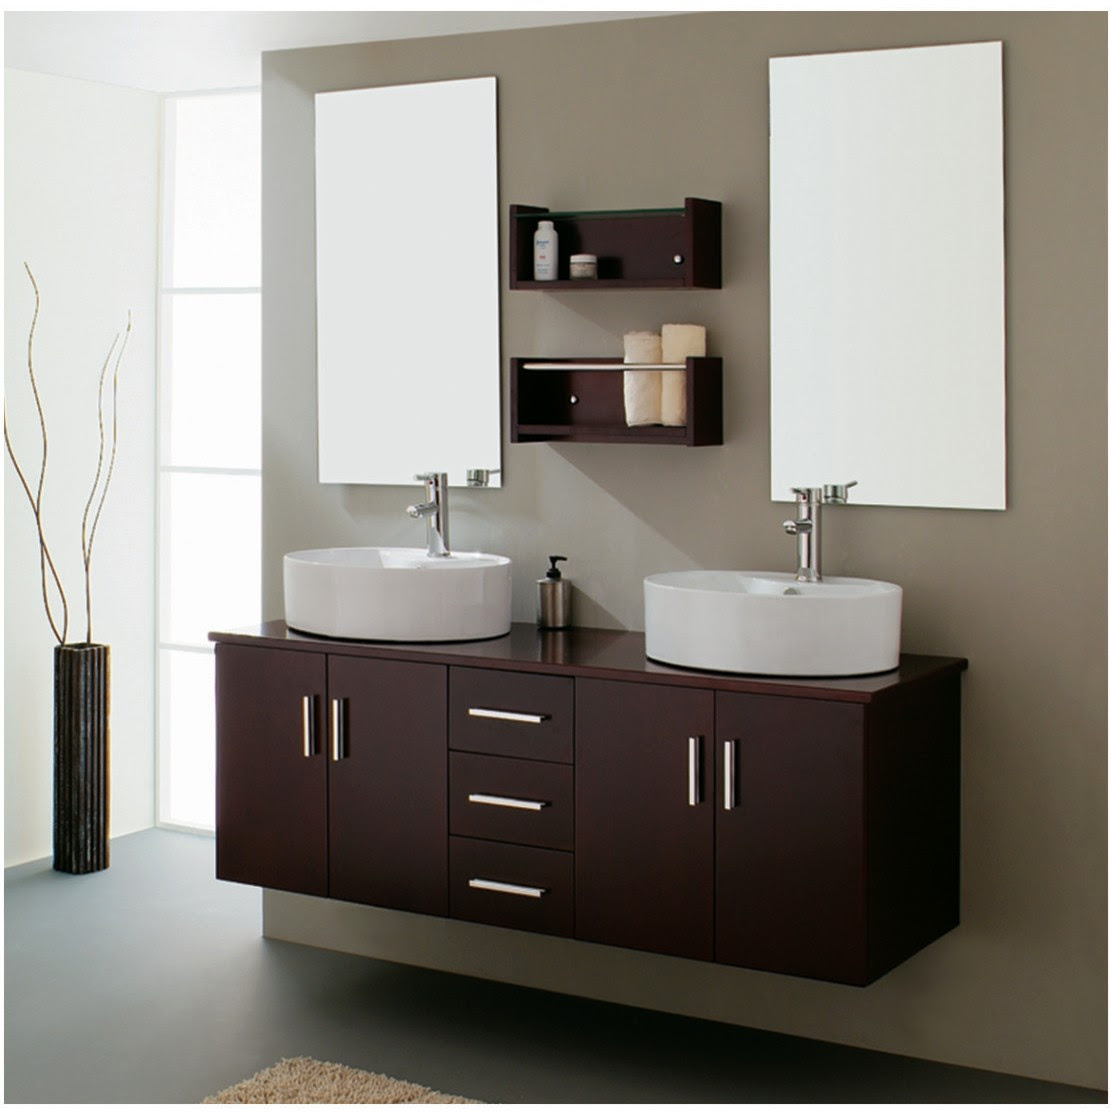 Amazing Double Sink Bathroom Vanities 1111 x 1114 · 121 kB · jpeg